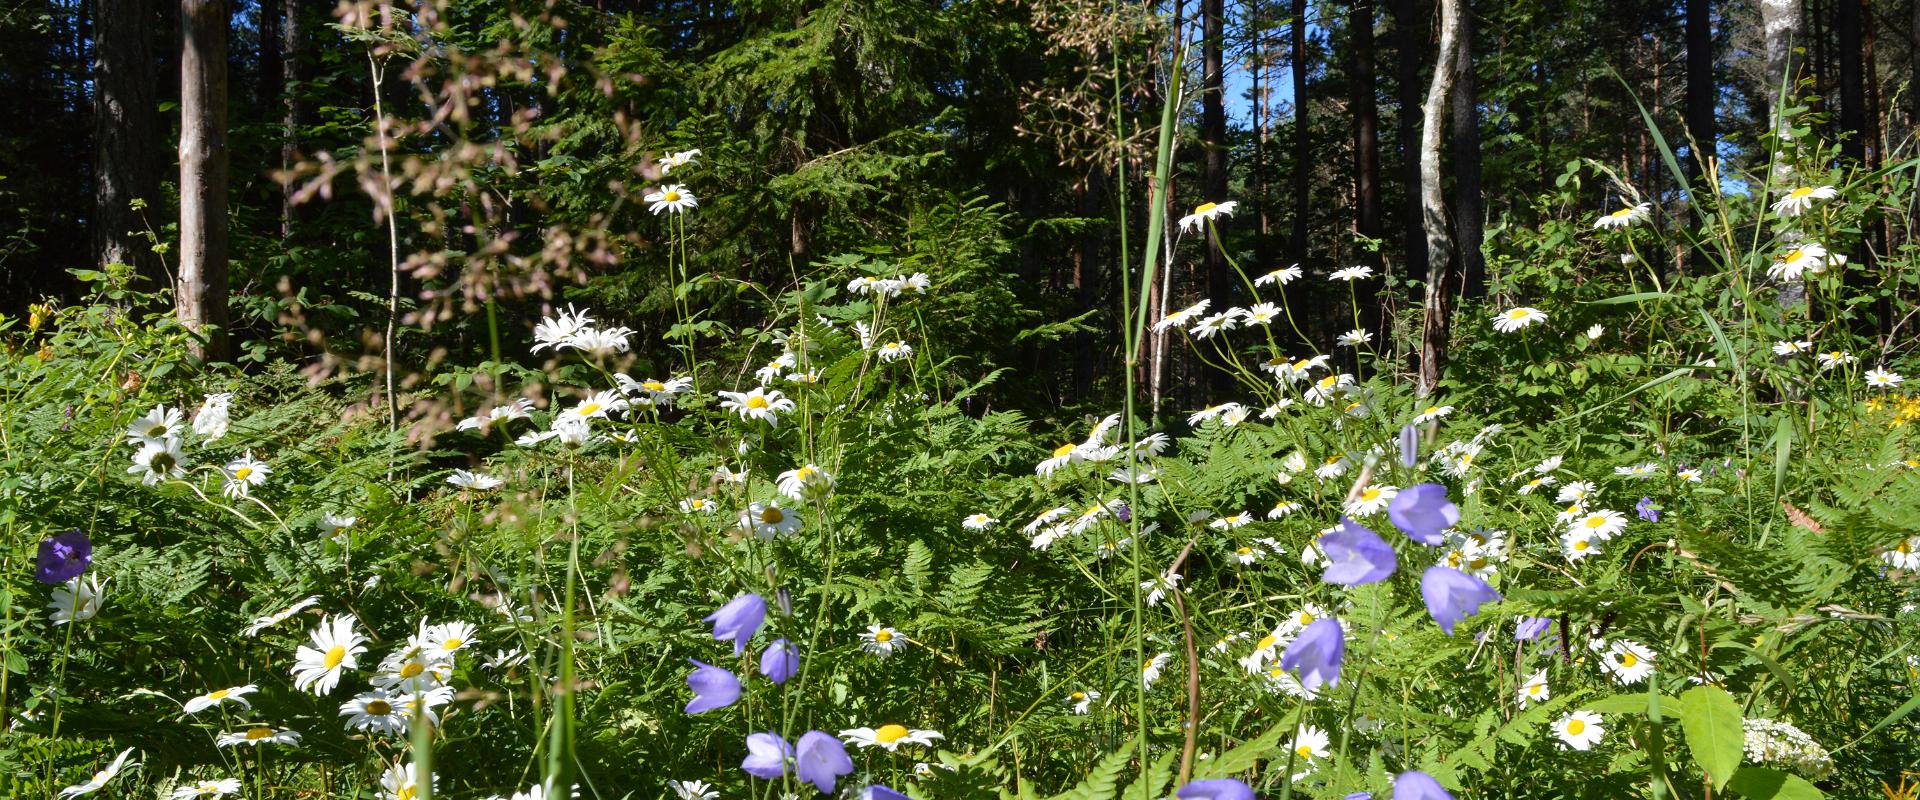 Viidumäe Study and Nature Trail